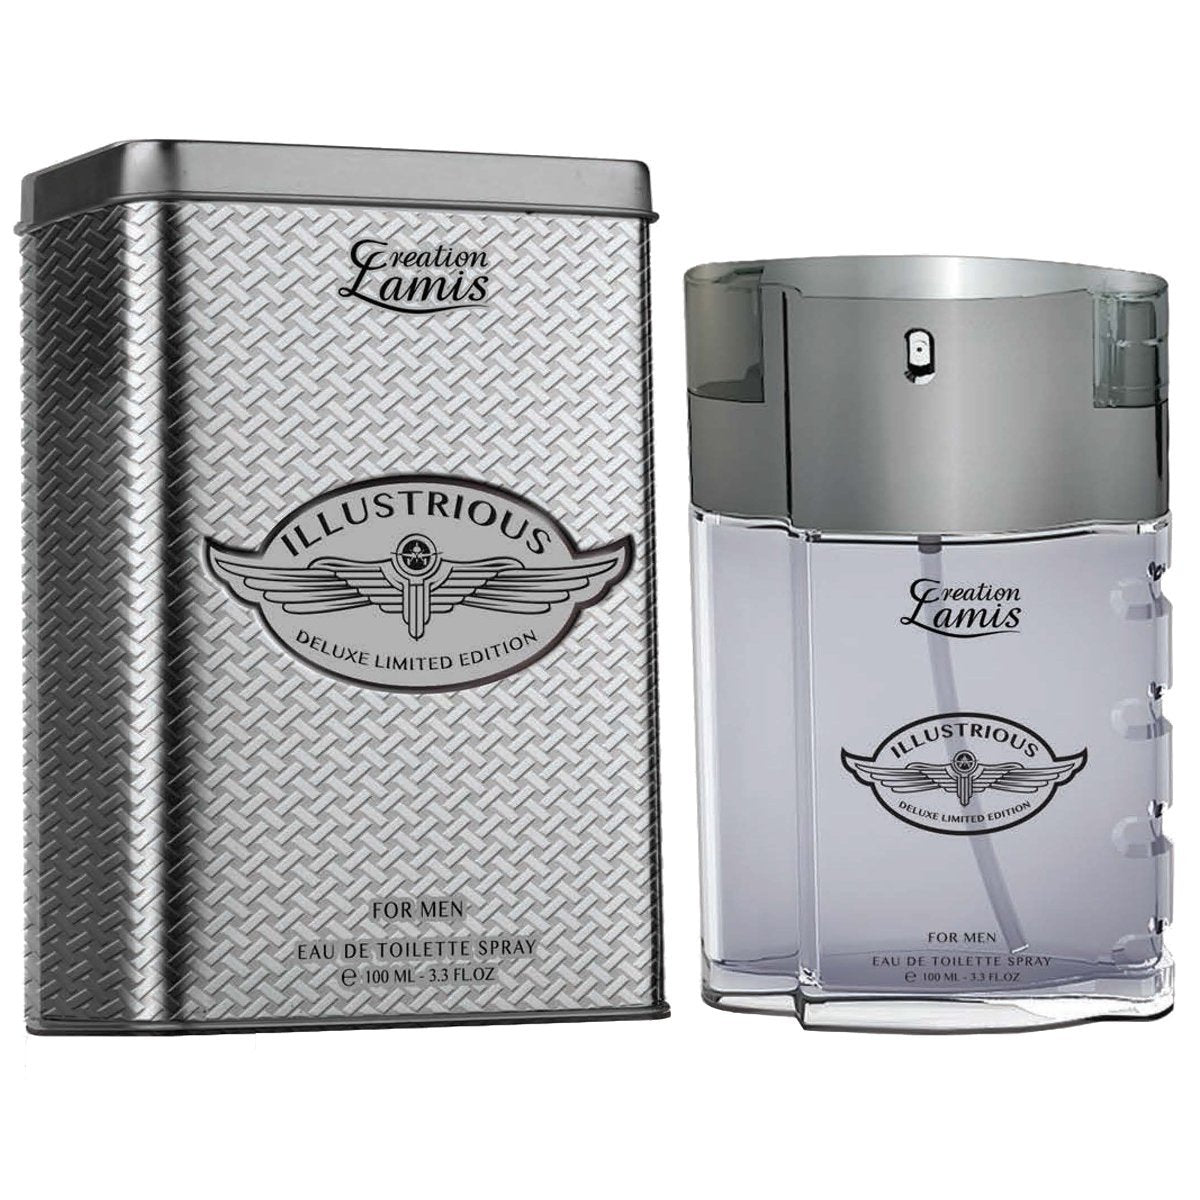 Creation Lamis Lamis Illustrious Deluxe Limited Edition by Creation Lamis Men 3.4 oz Eau de Toilette Spray | FragranceBaba.com